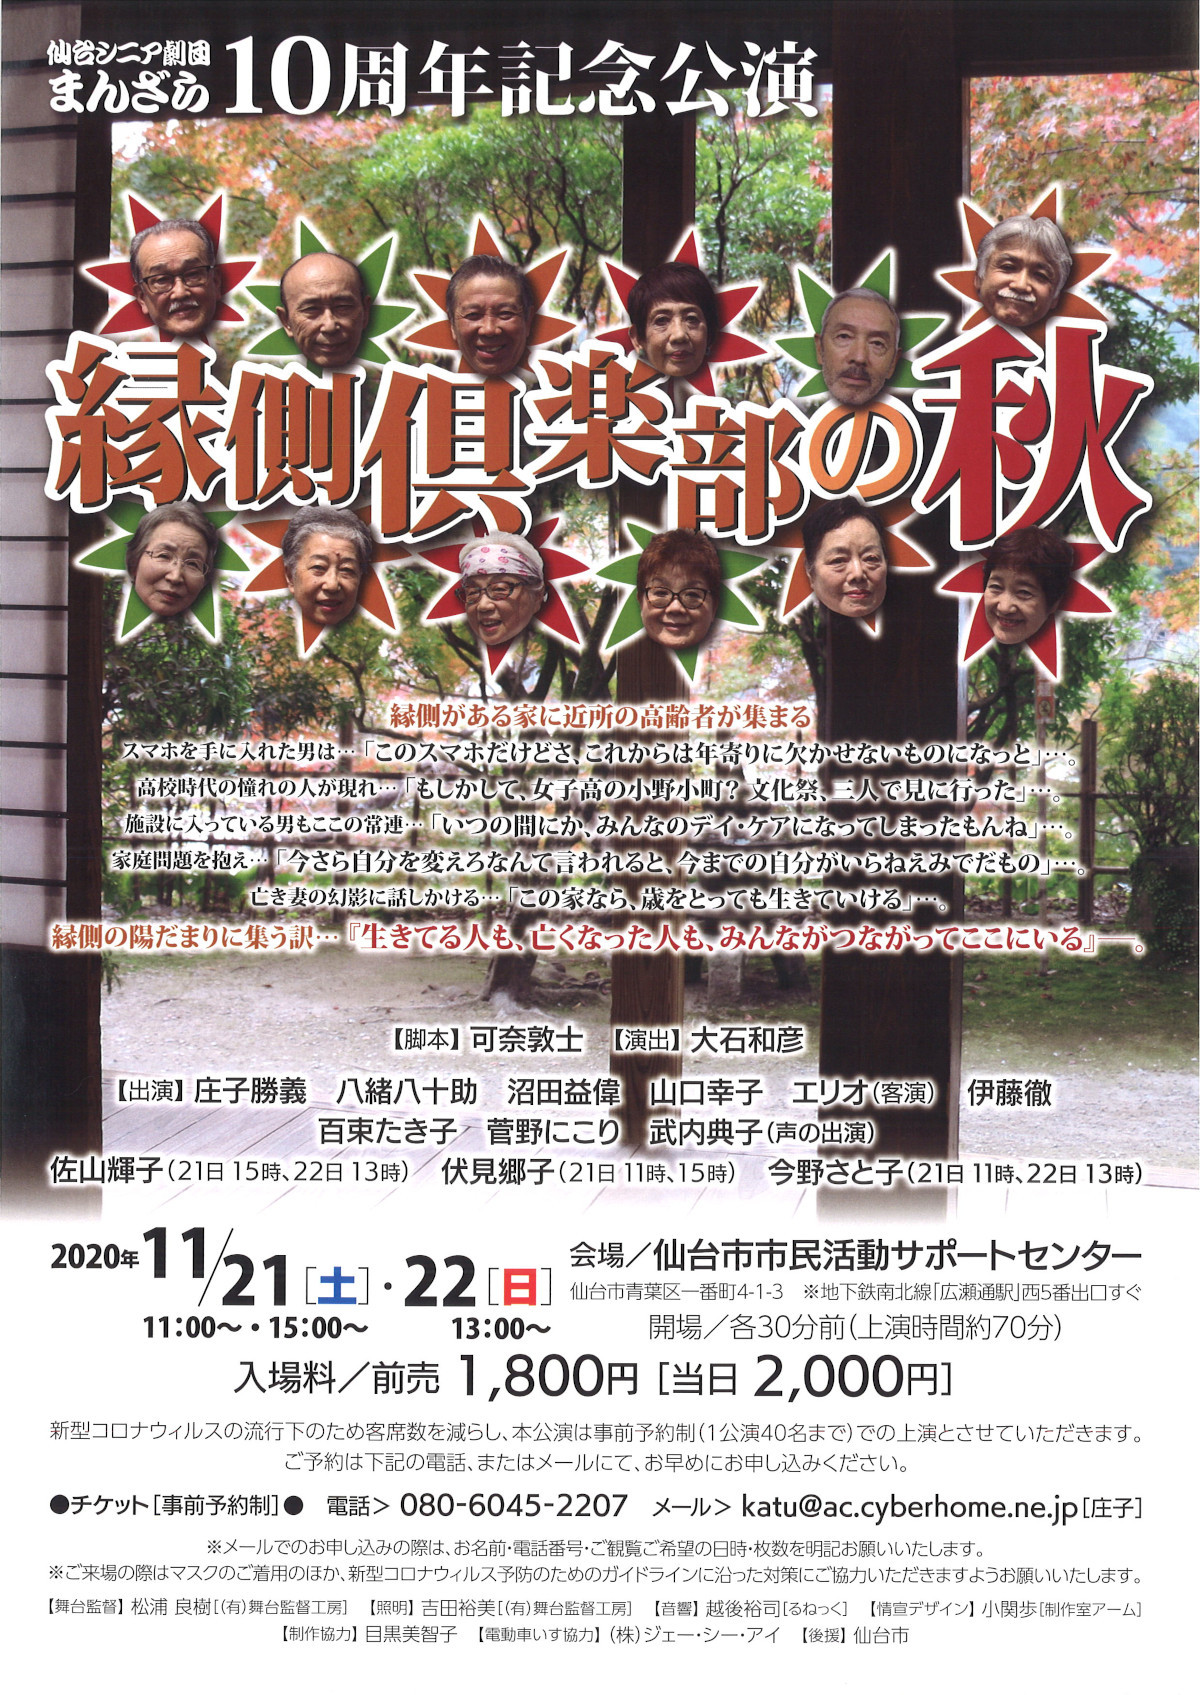 仙台シニア劇団まんざら10周年記念公演 『縁側倶楽部の秋』 | 仙台演劇